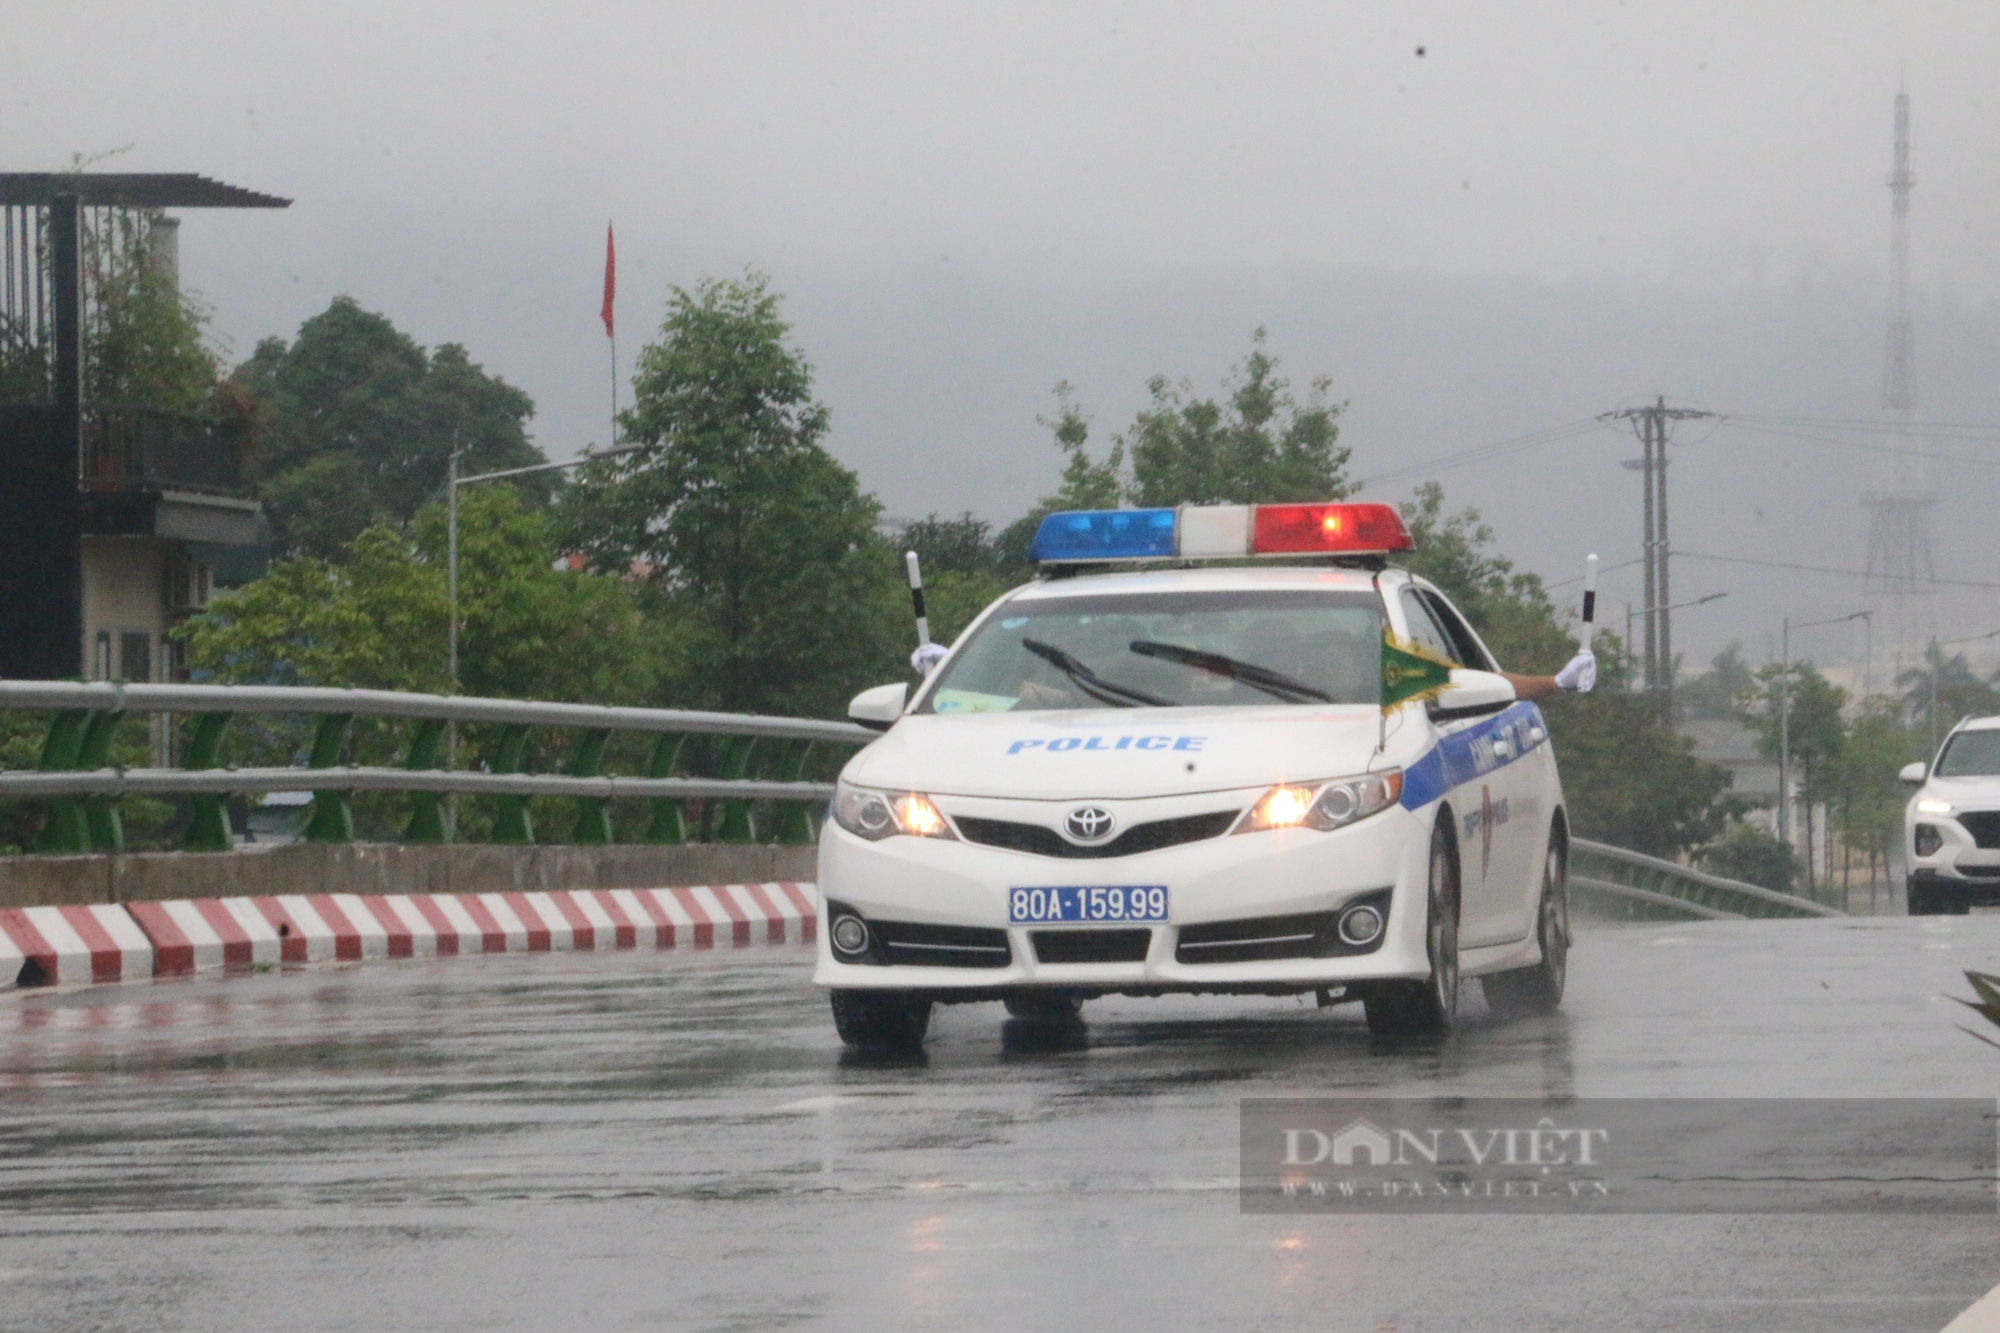  Chùm ảnh: Lực lượng CSGT Hoà Bình đầm mưa phân luồng giao thông phục vụ  - Ảnh 3.